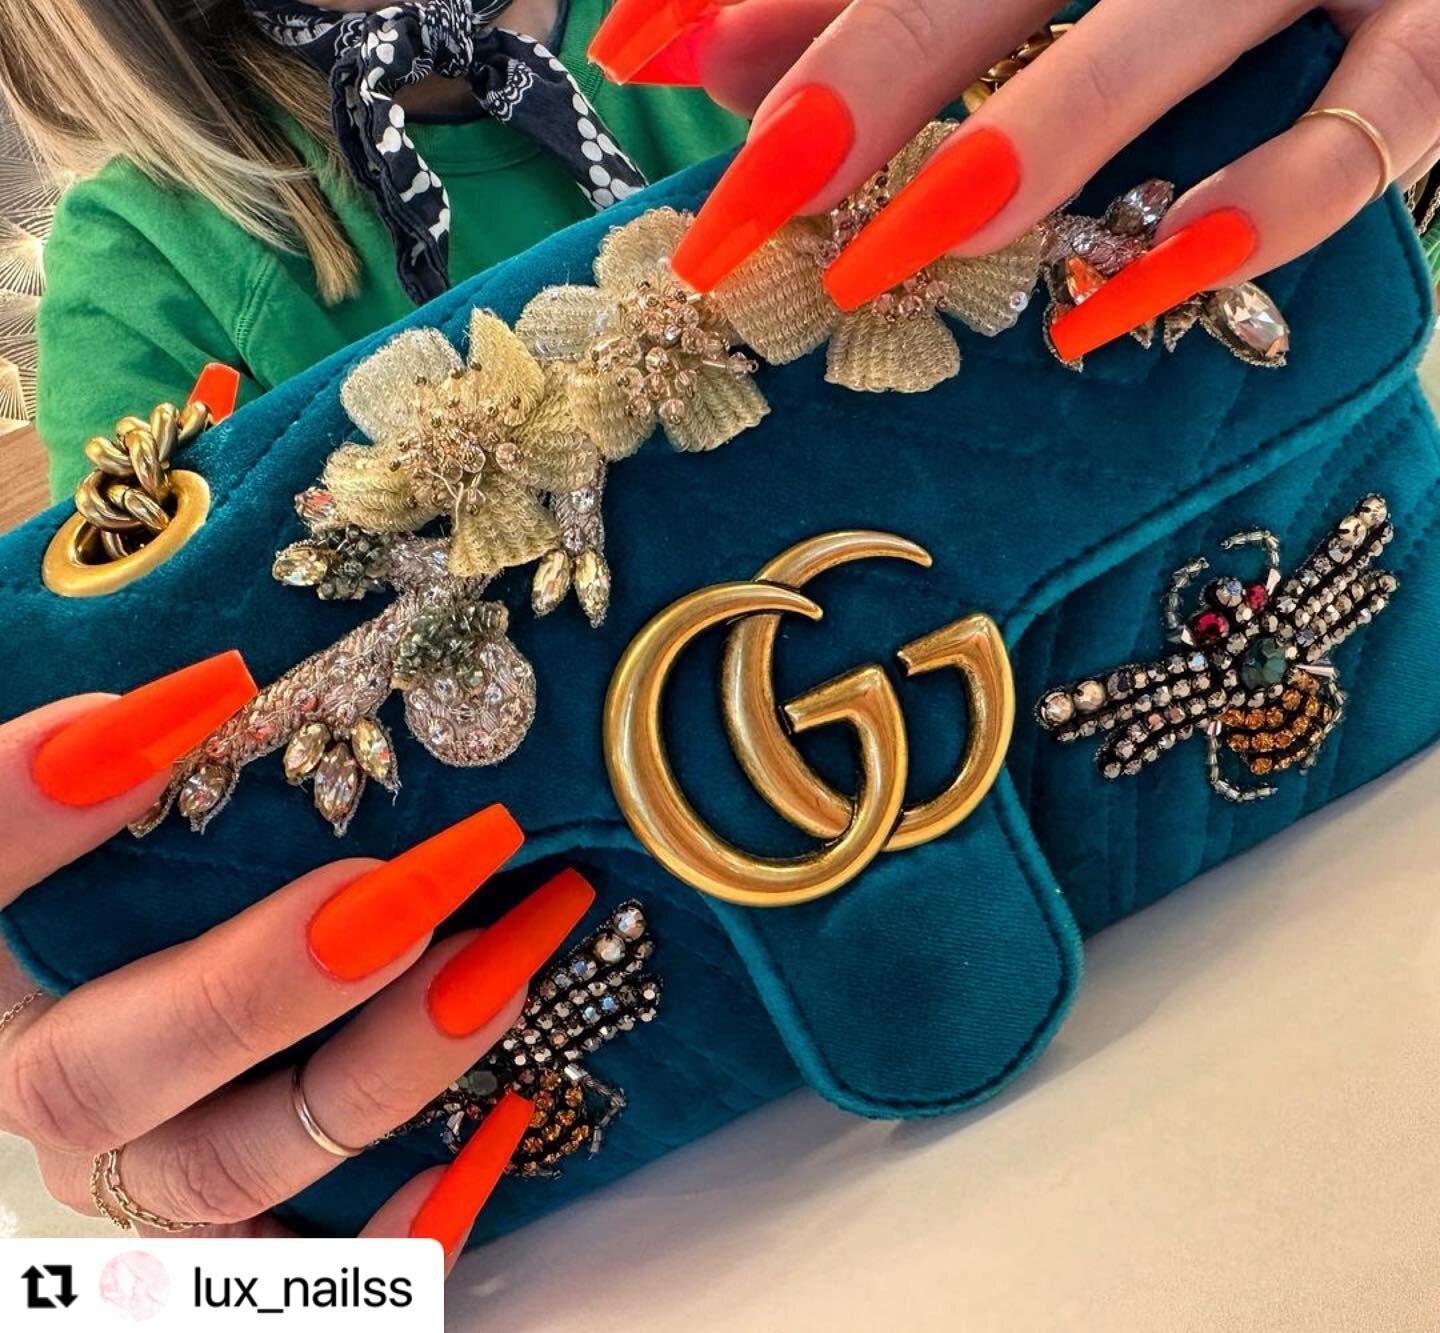 #Repost @lux_nailss with @use.repost @refinenailsandspa 
・・・
We love a little Gucci moment🐝🧡
.
.
.
.
.
.
.
.
#gelnails #gelxnails #neonnails #gucci #nails #nailsofinstagram #seattle #seattlesalon #nailinspo #coffinnails #longnails #refinenailsandsp